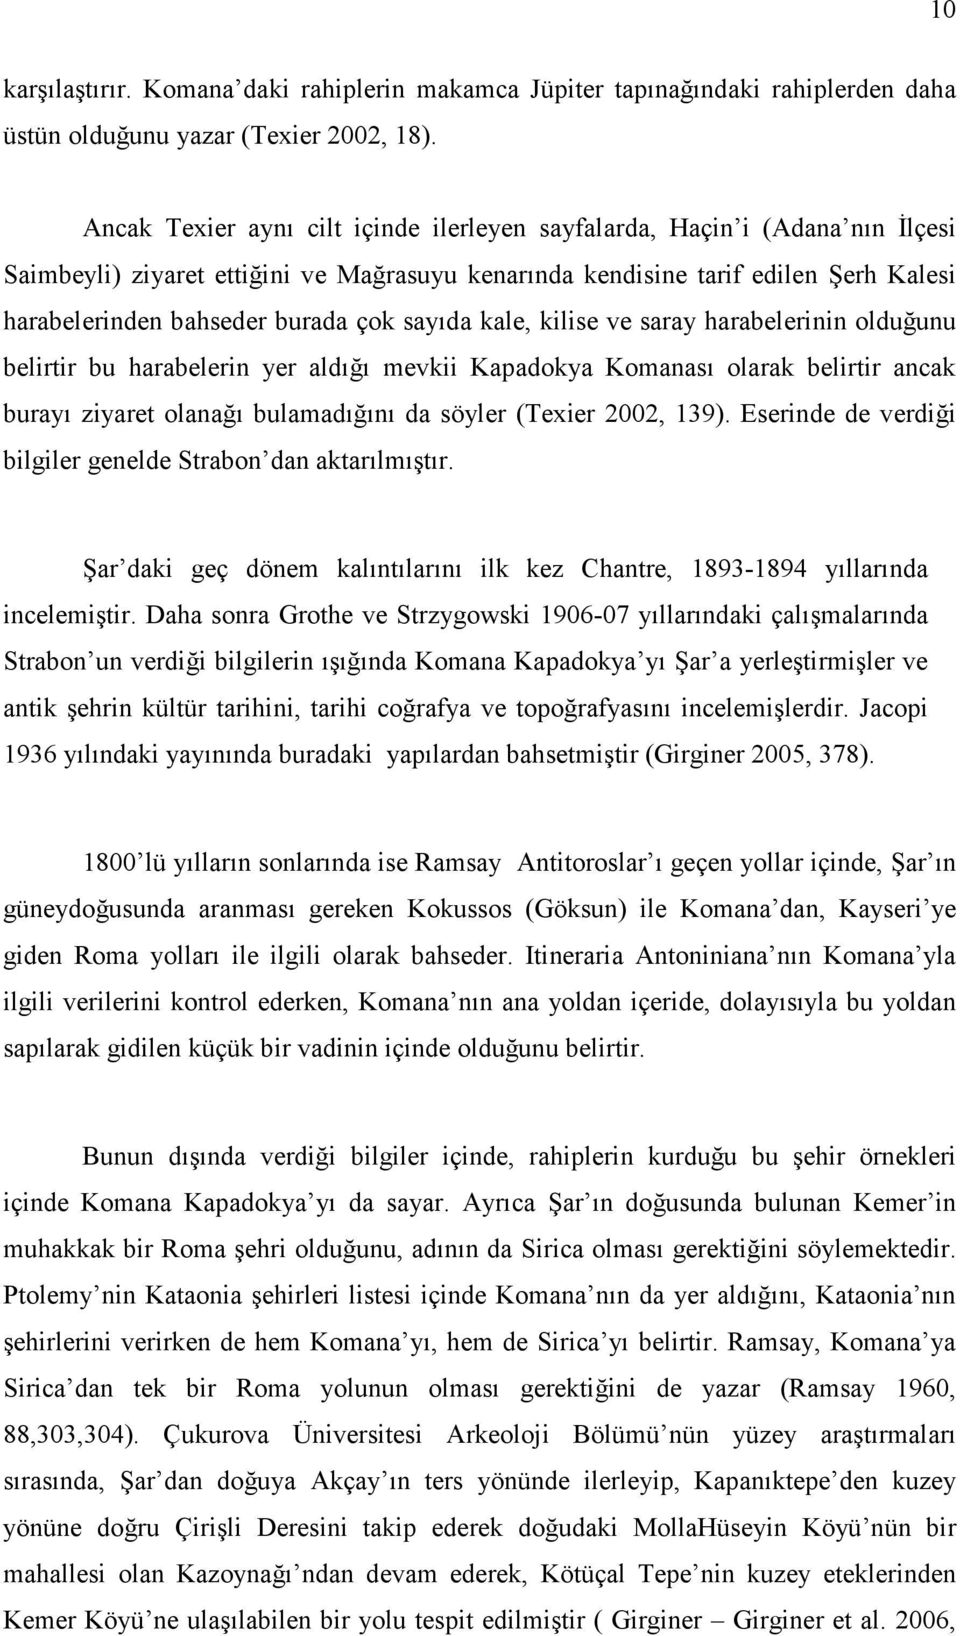 sayıda kale, kilise ve saray harabelerinin olduğunu belirtir bu harabelerin yer aldığı mevkii Kapadokya Komanası olarak belirtir ancak burayı ziyaret olanağı bulamadığını da söyler (Texier 2002, 139).